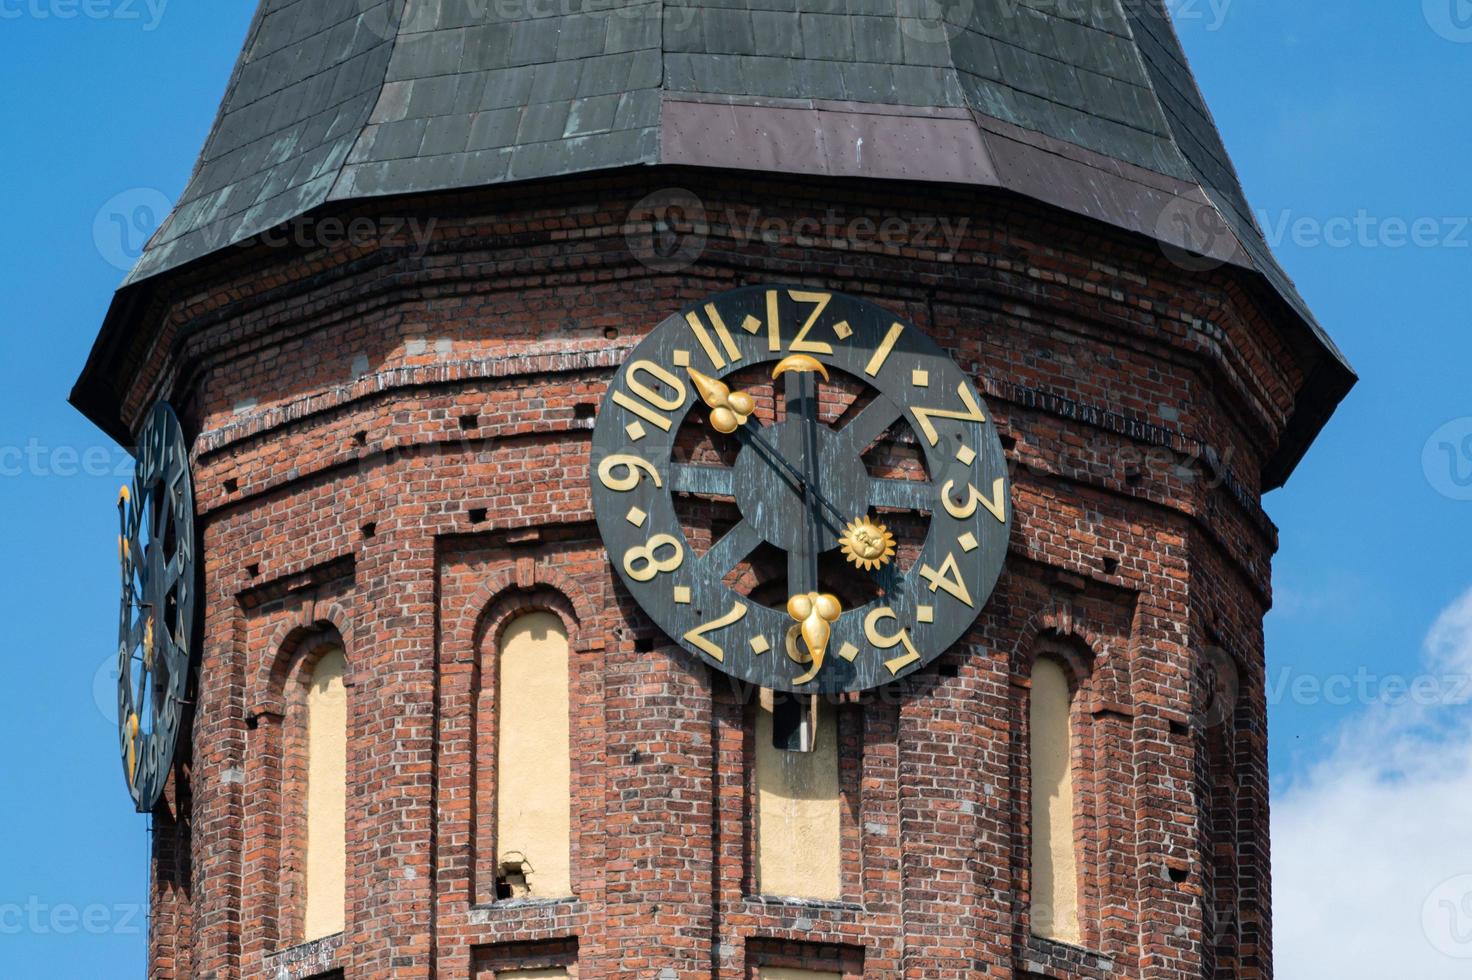 torre del reloj de la catedral de konigsberg. monumento de estilo gótico de ladrillo en kaliningrado, rusia. isla emmanuel kant. foto